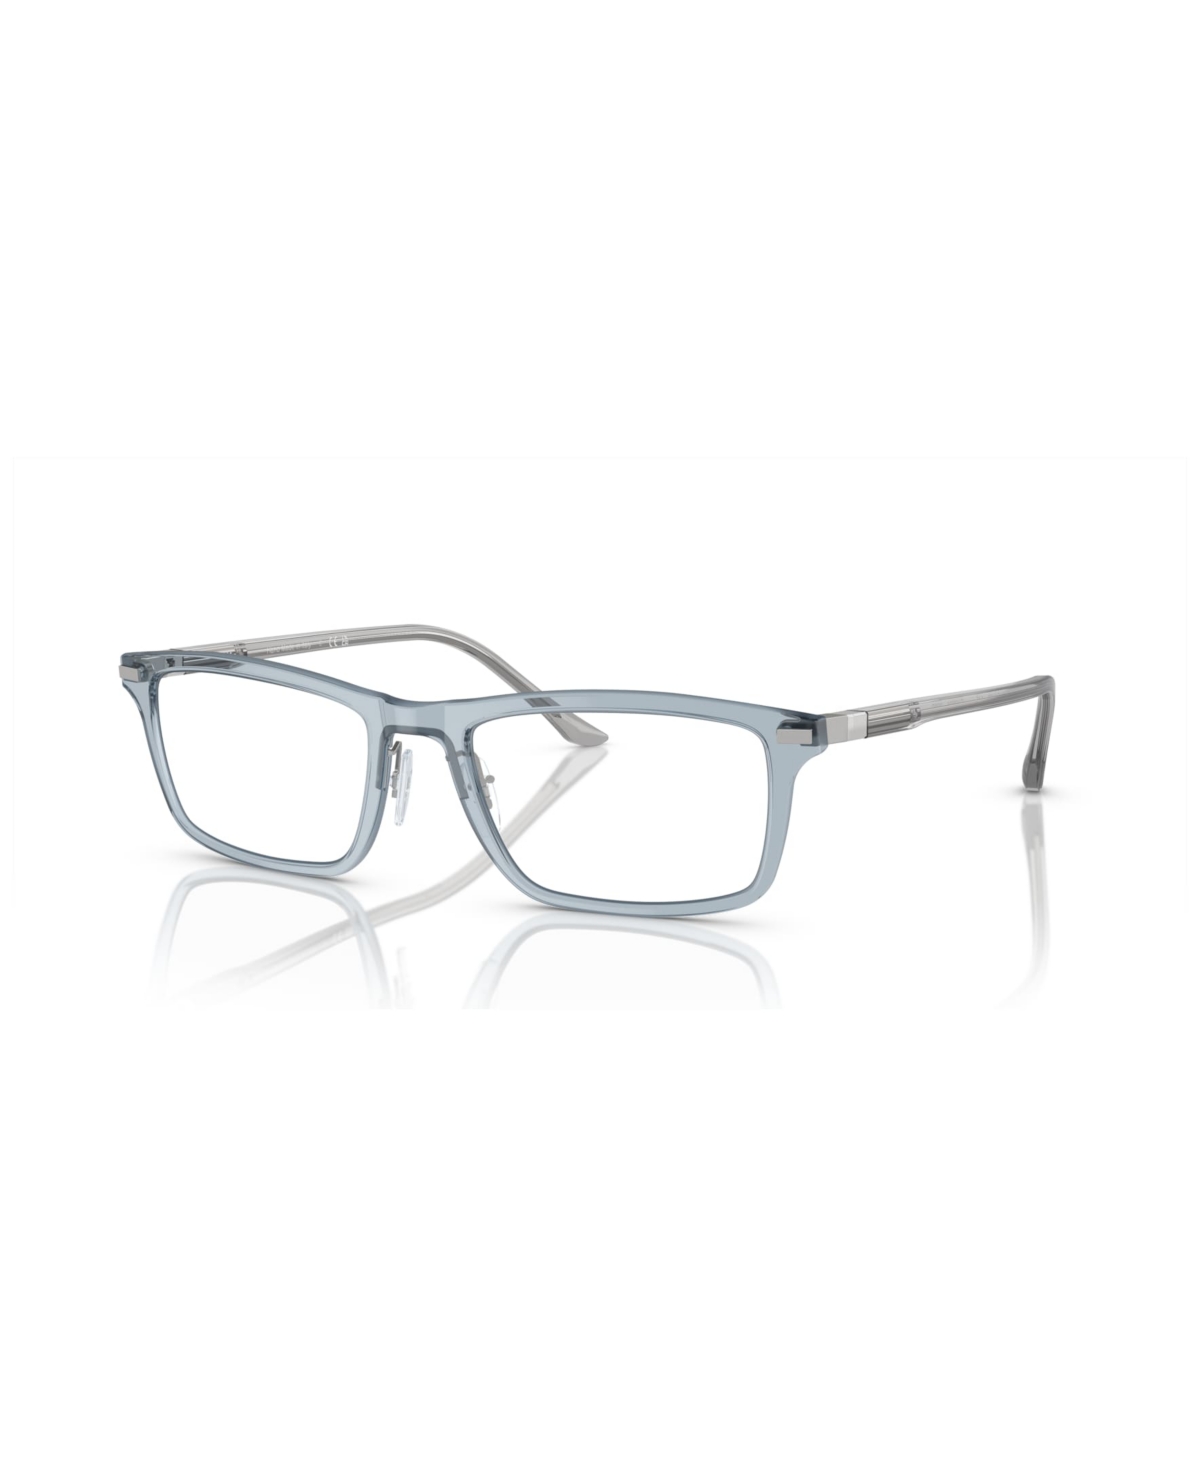 Starck Men's Eyeglasses, SH2081 - Transparent Light Blue